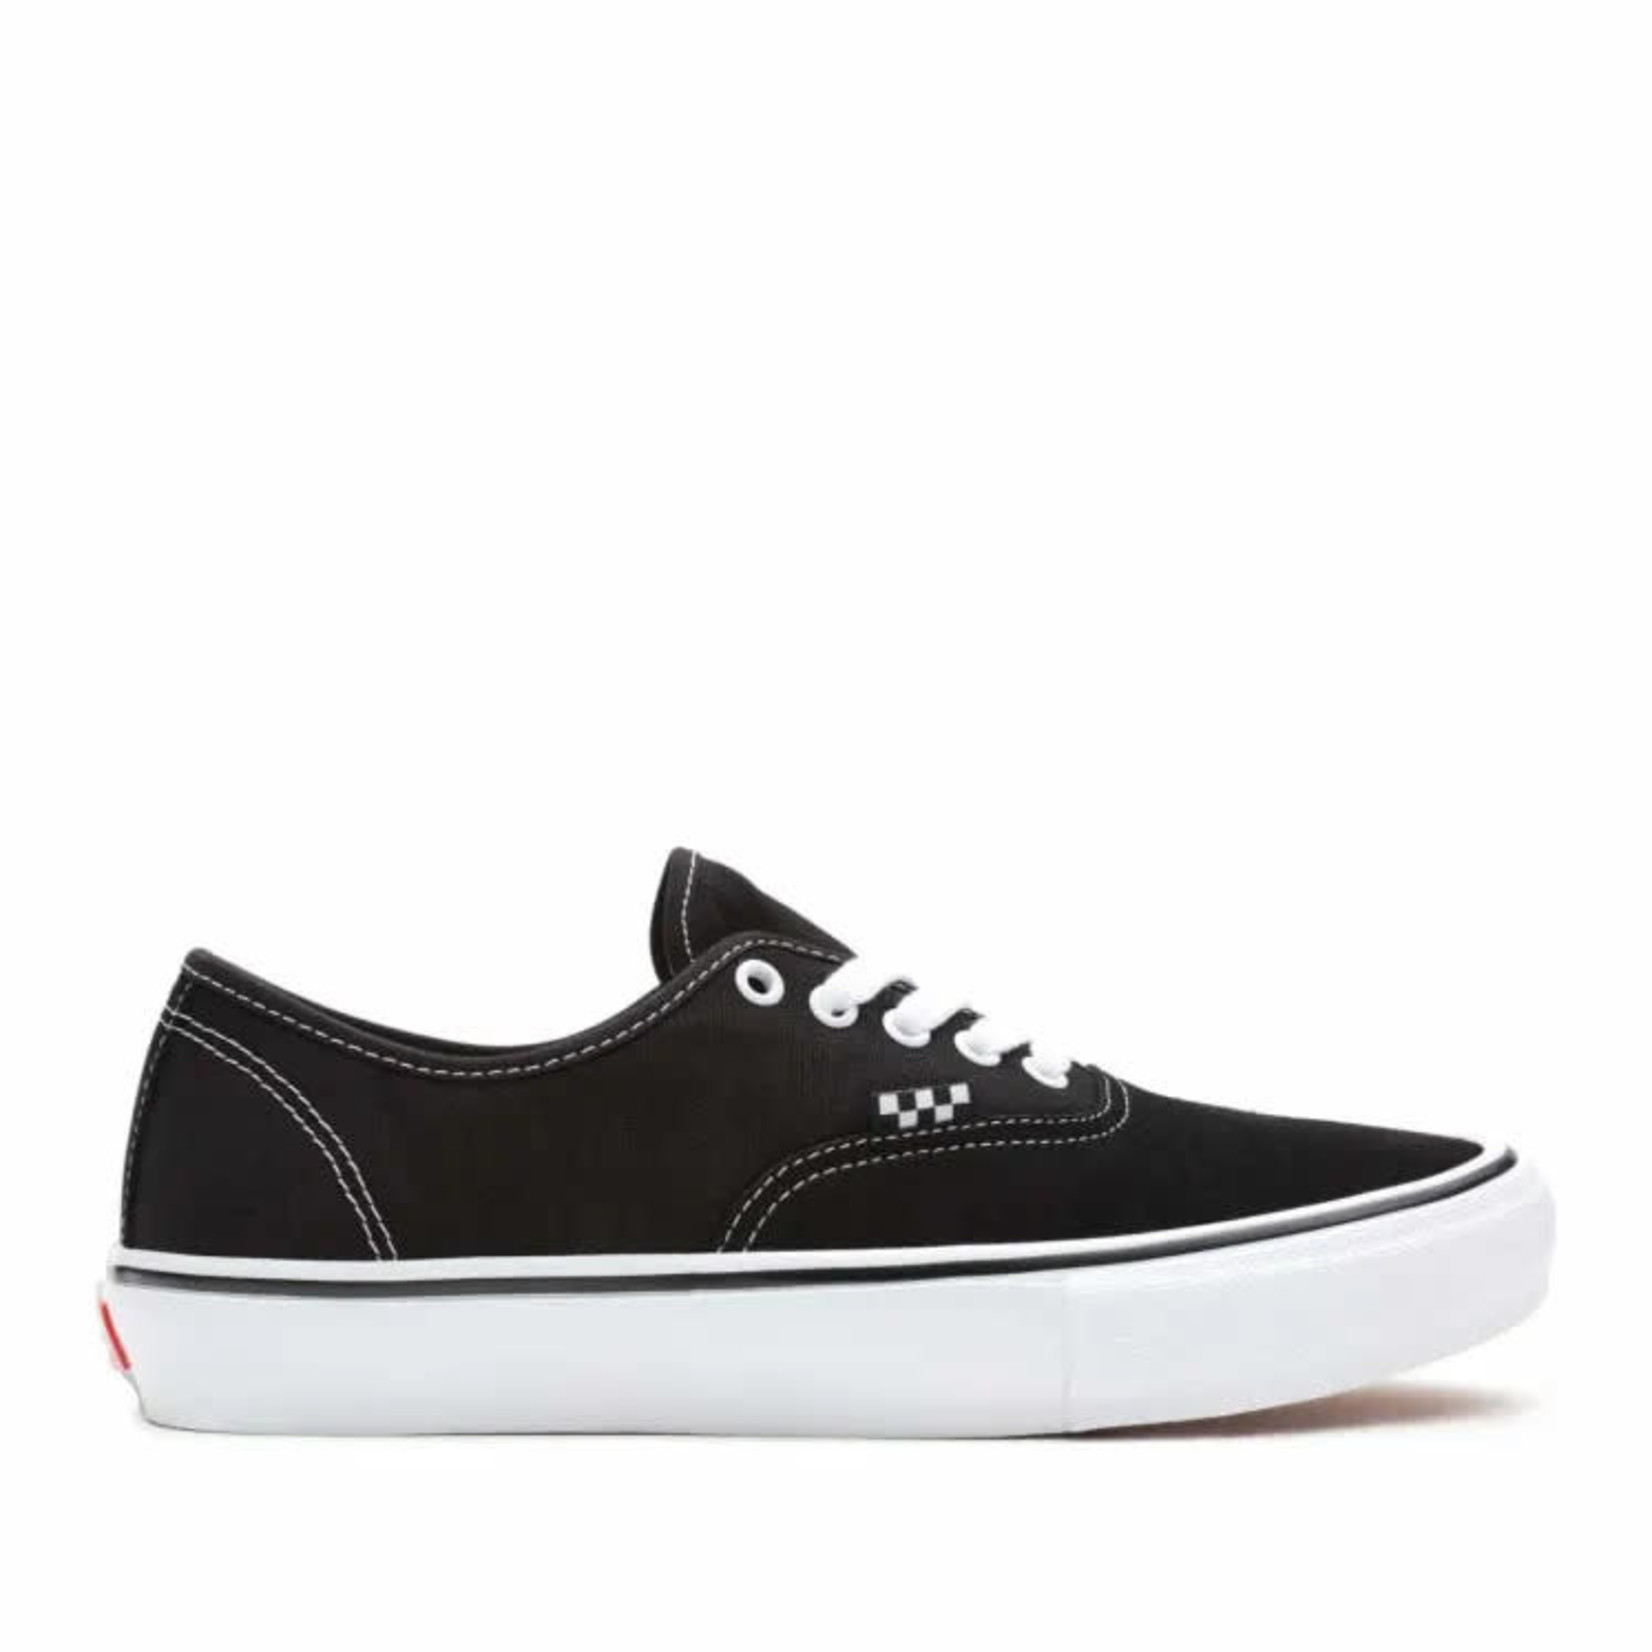 Vans Authentic Pro Skate Shoes Blacktrue White Attic Skate